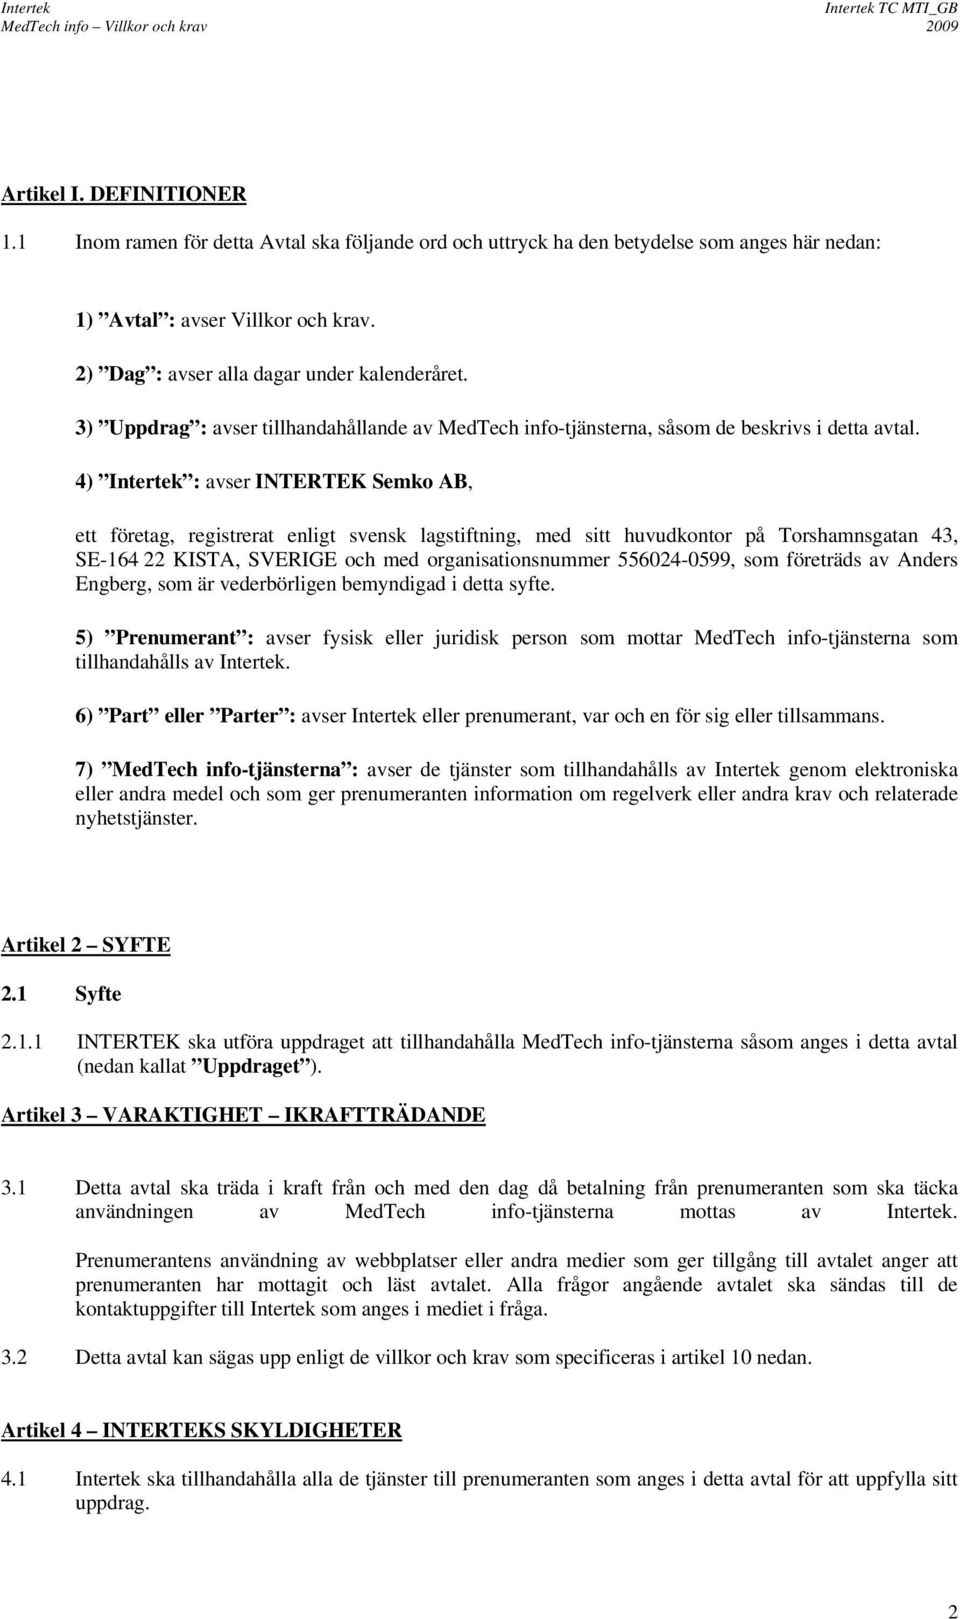 4) Intertek : avser INTERTEK Semko AB, ett företag, registrerat enligt svensk lagstiftning, med sitt huvudkontor på Torshamnsgatan 43, SE-164 22 KISTA, SVERIGE och med organisationsnummer